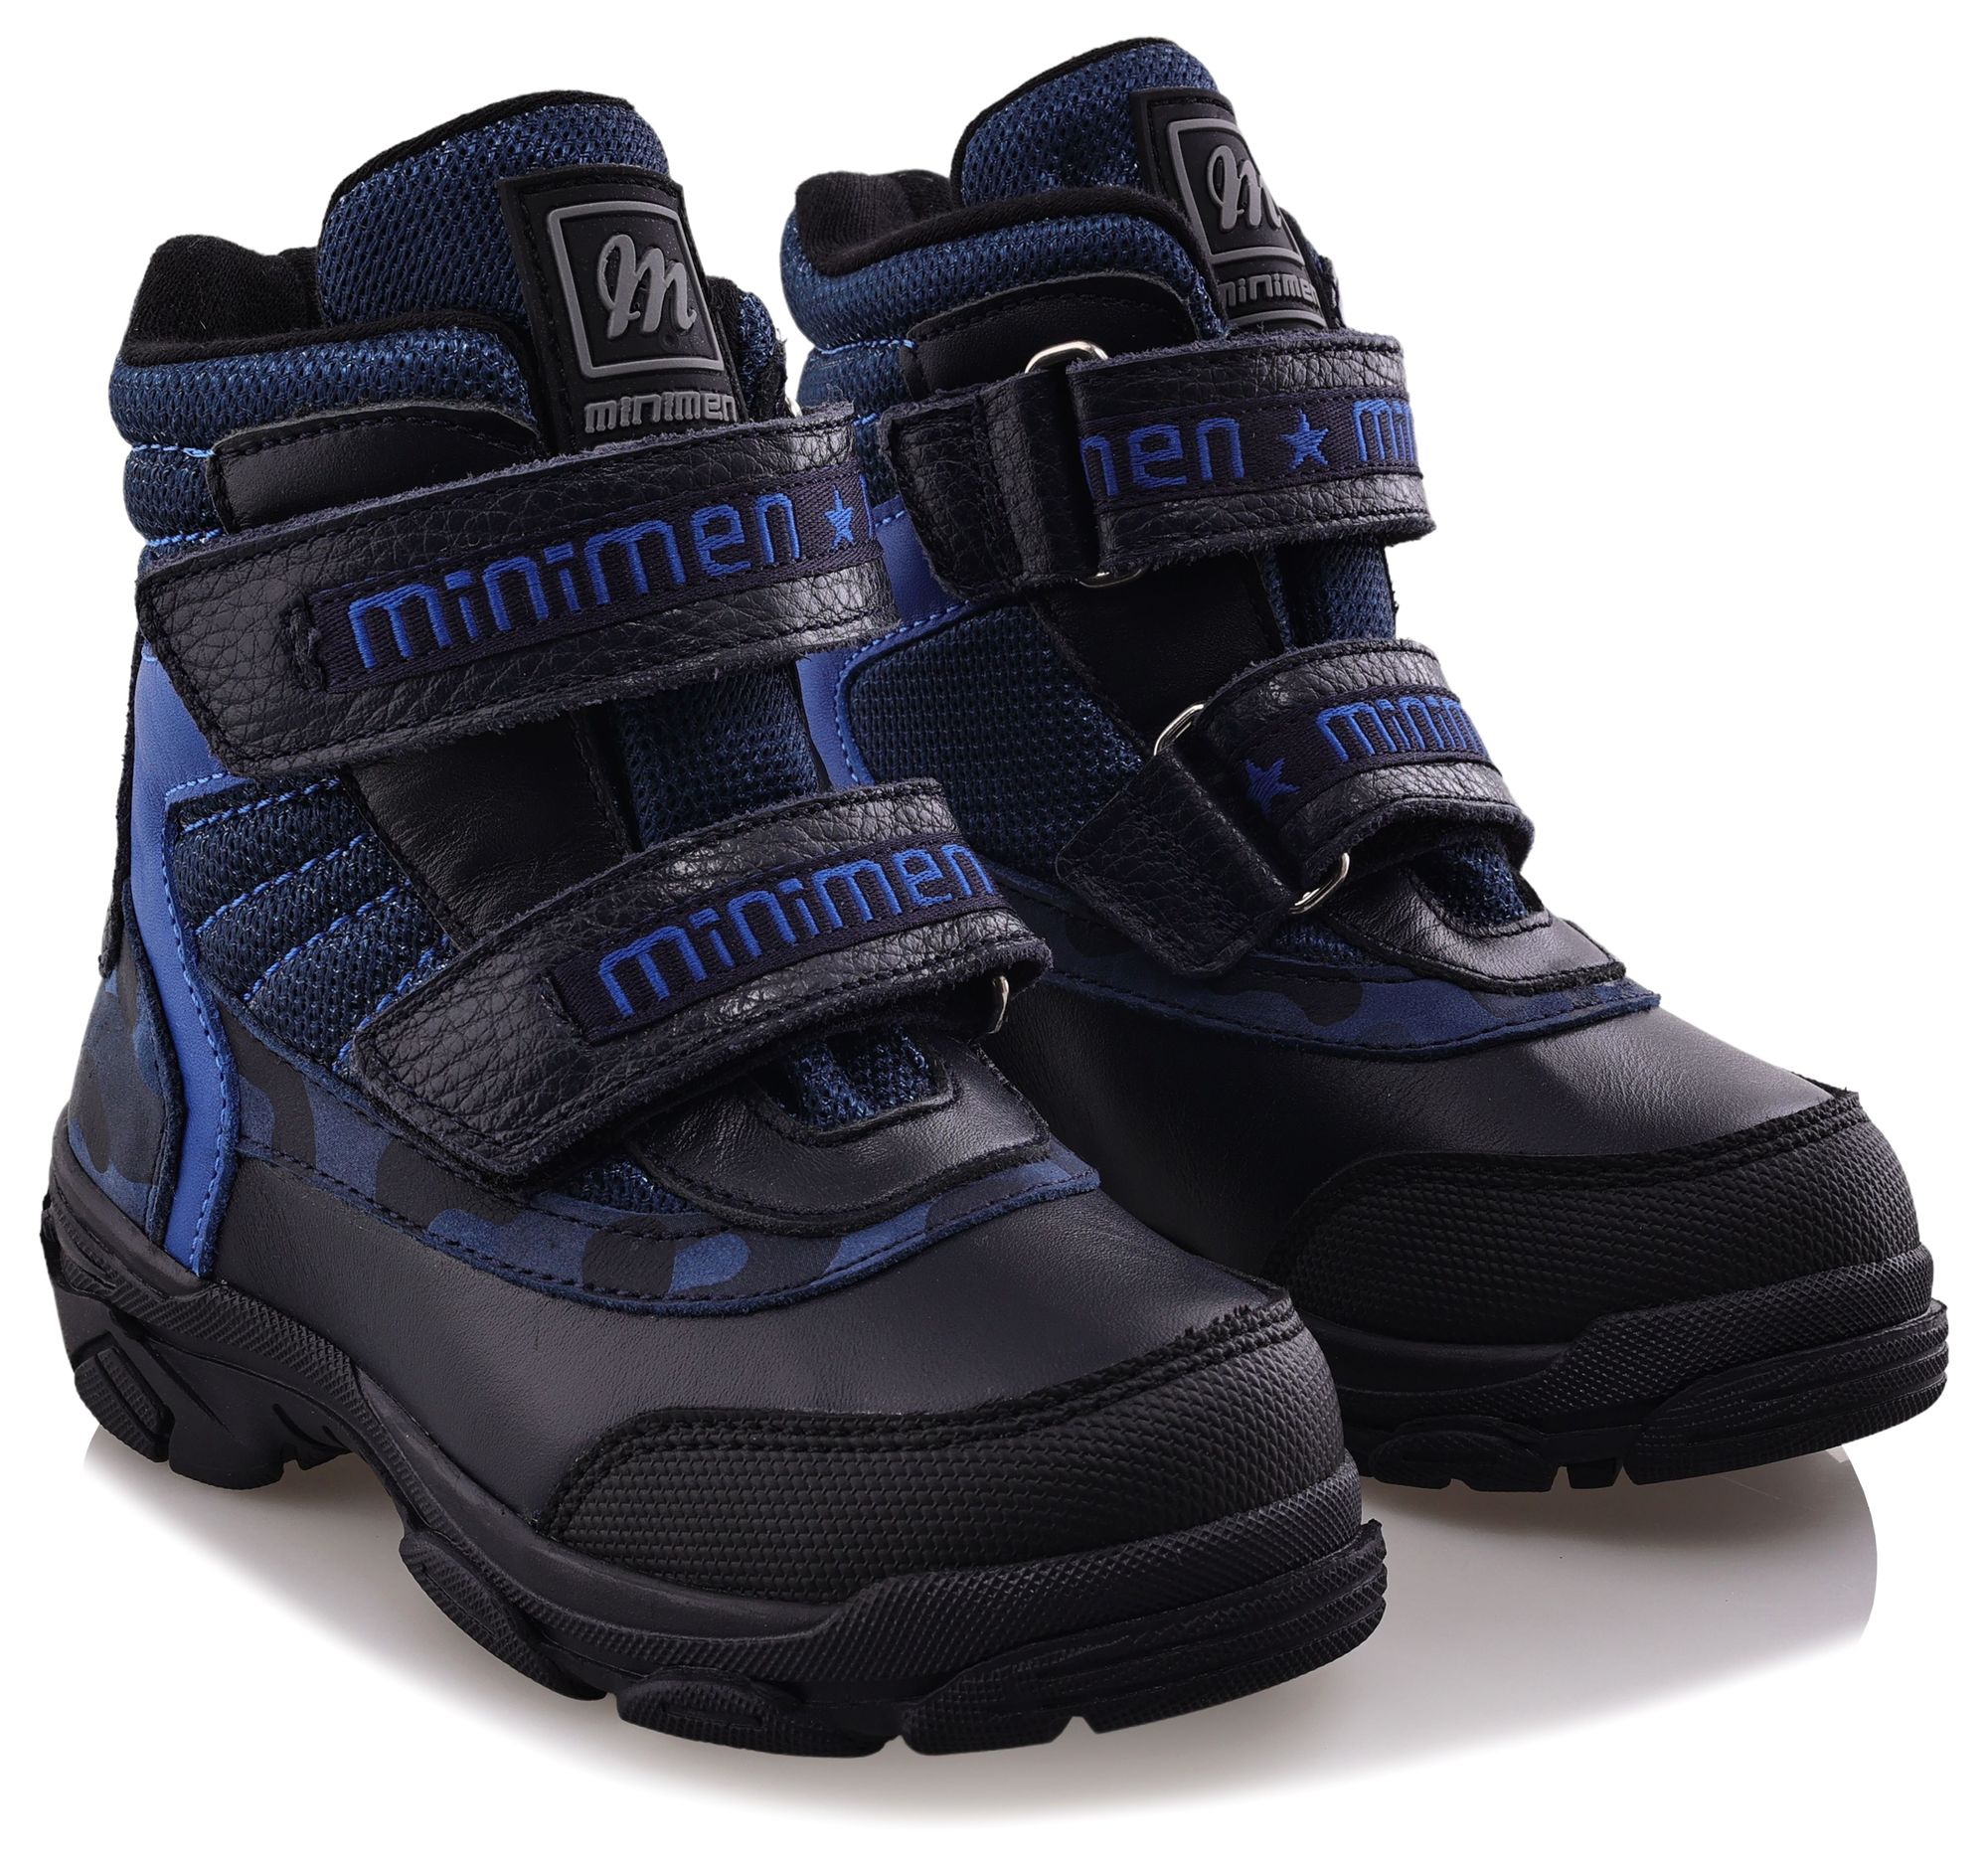 Ботинки Minimen для мальчиков, тёмно-синие, размер 23, 2655-52-23B-02